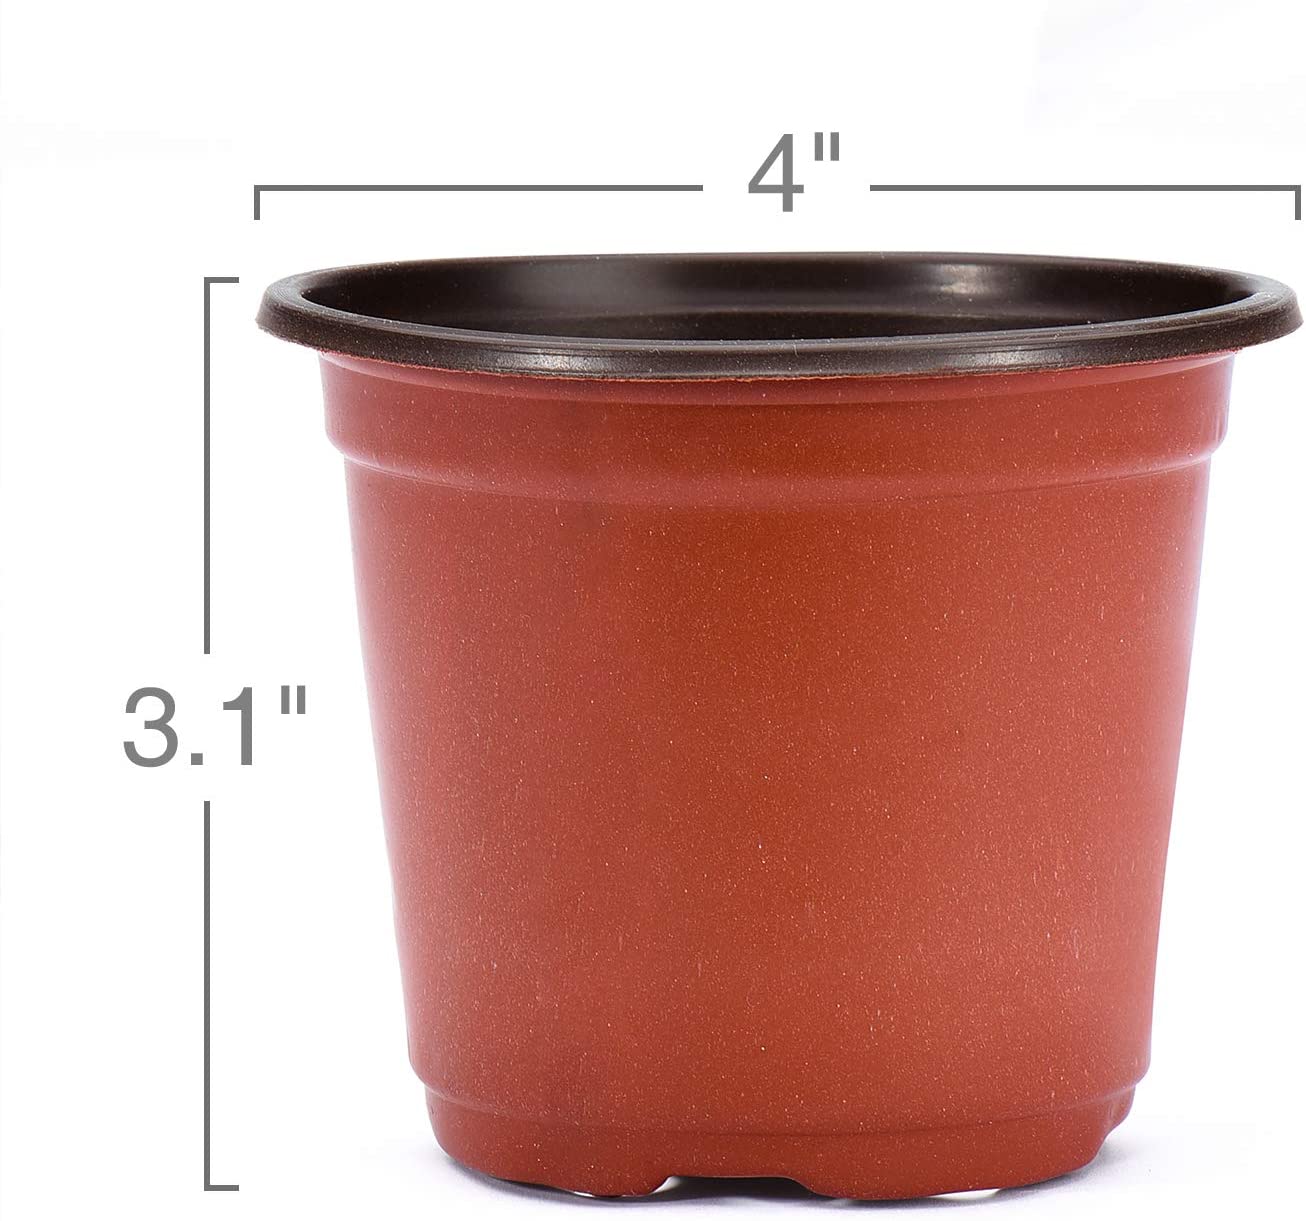 4 Inch Plants Nursery Pots